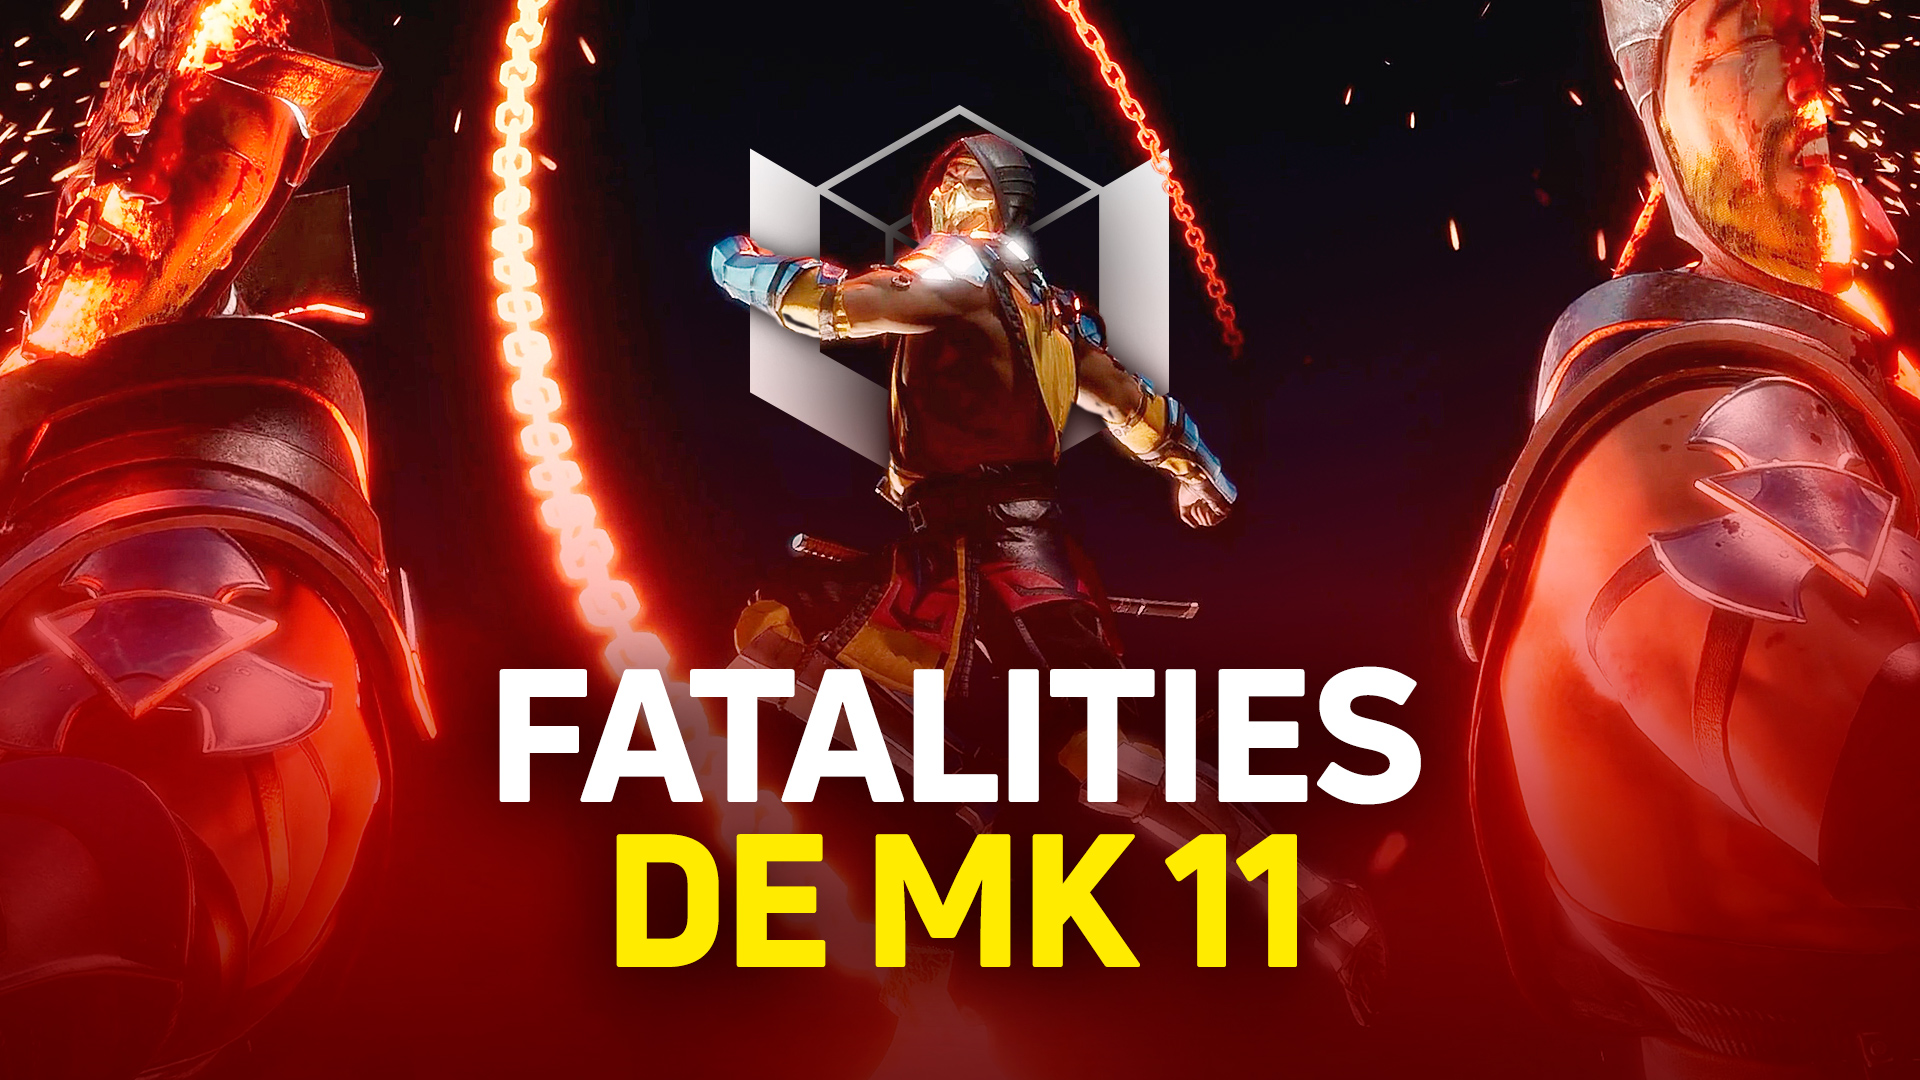 Fatality De Mortal Kombat 11 Veja Todos Os Finalizadores Do Game Voxel 